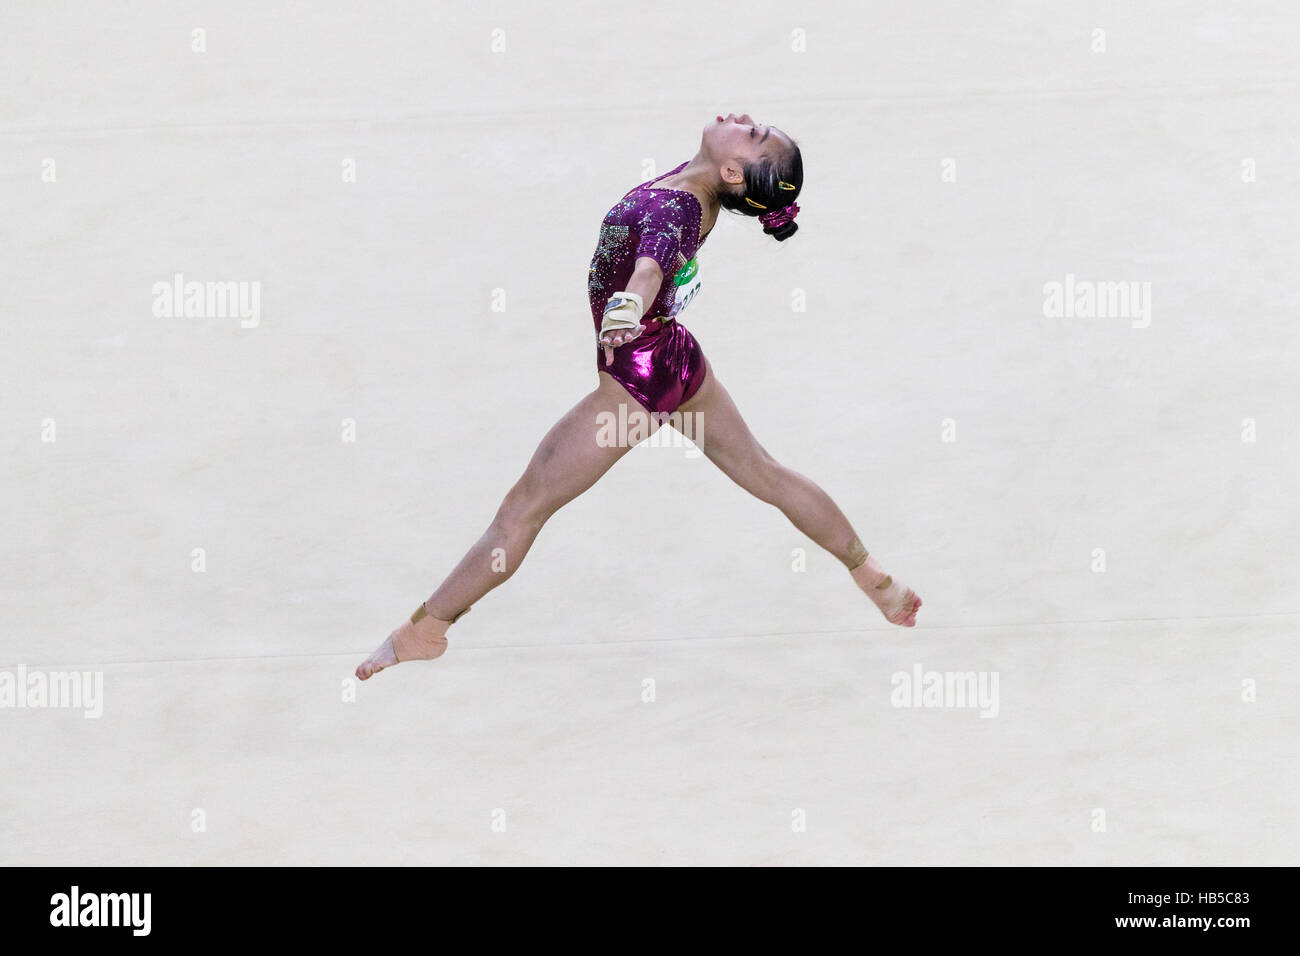 Rio de Janeiro, Brésil. 9 août 2016. Chunsong Shang (CHN) effectue l'exercice au sol à la compétition par équipe dring 2016 Jeux Olympiques d'été. ©Pau Banque D'Images